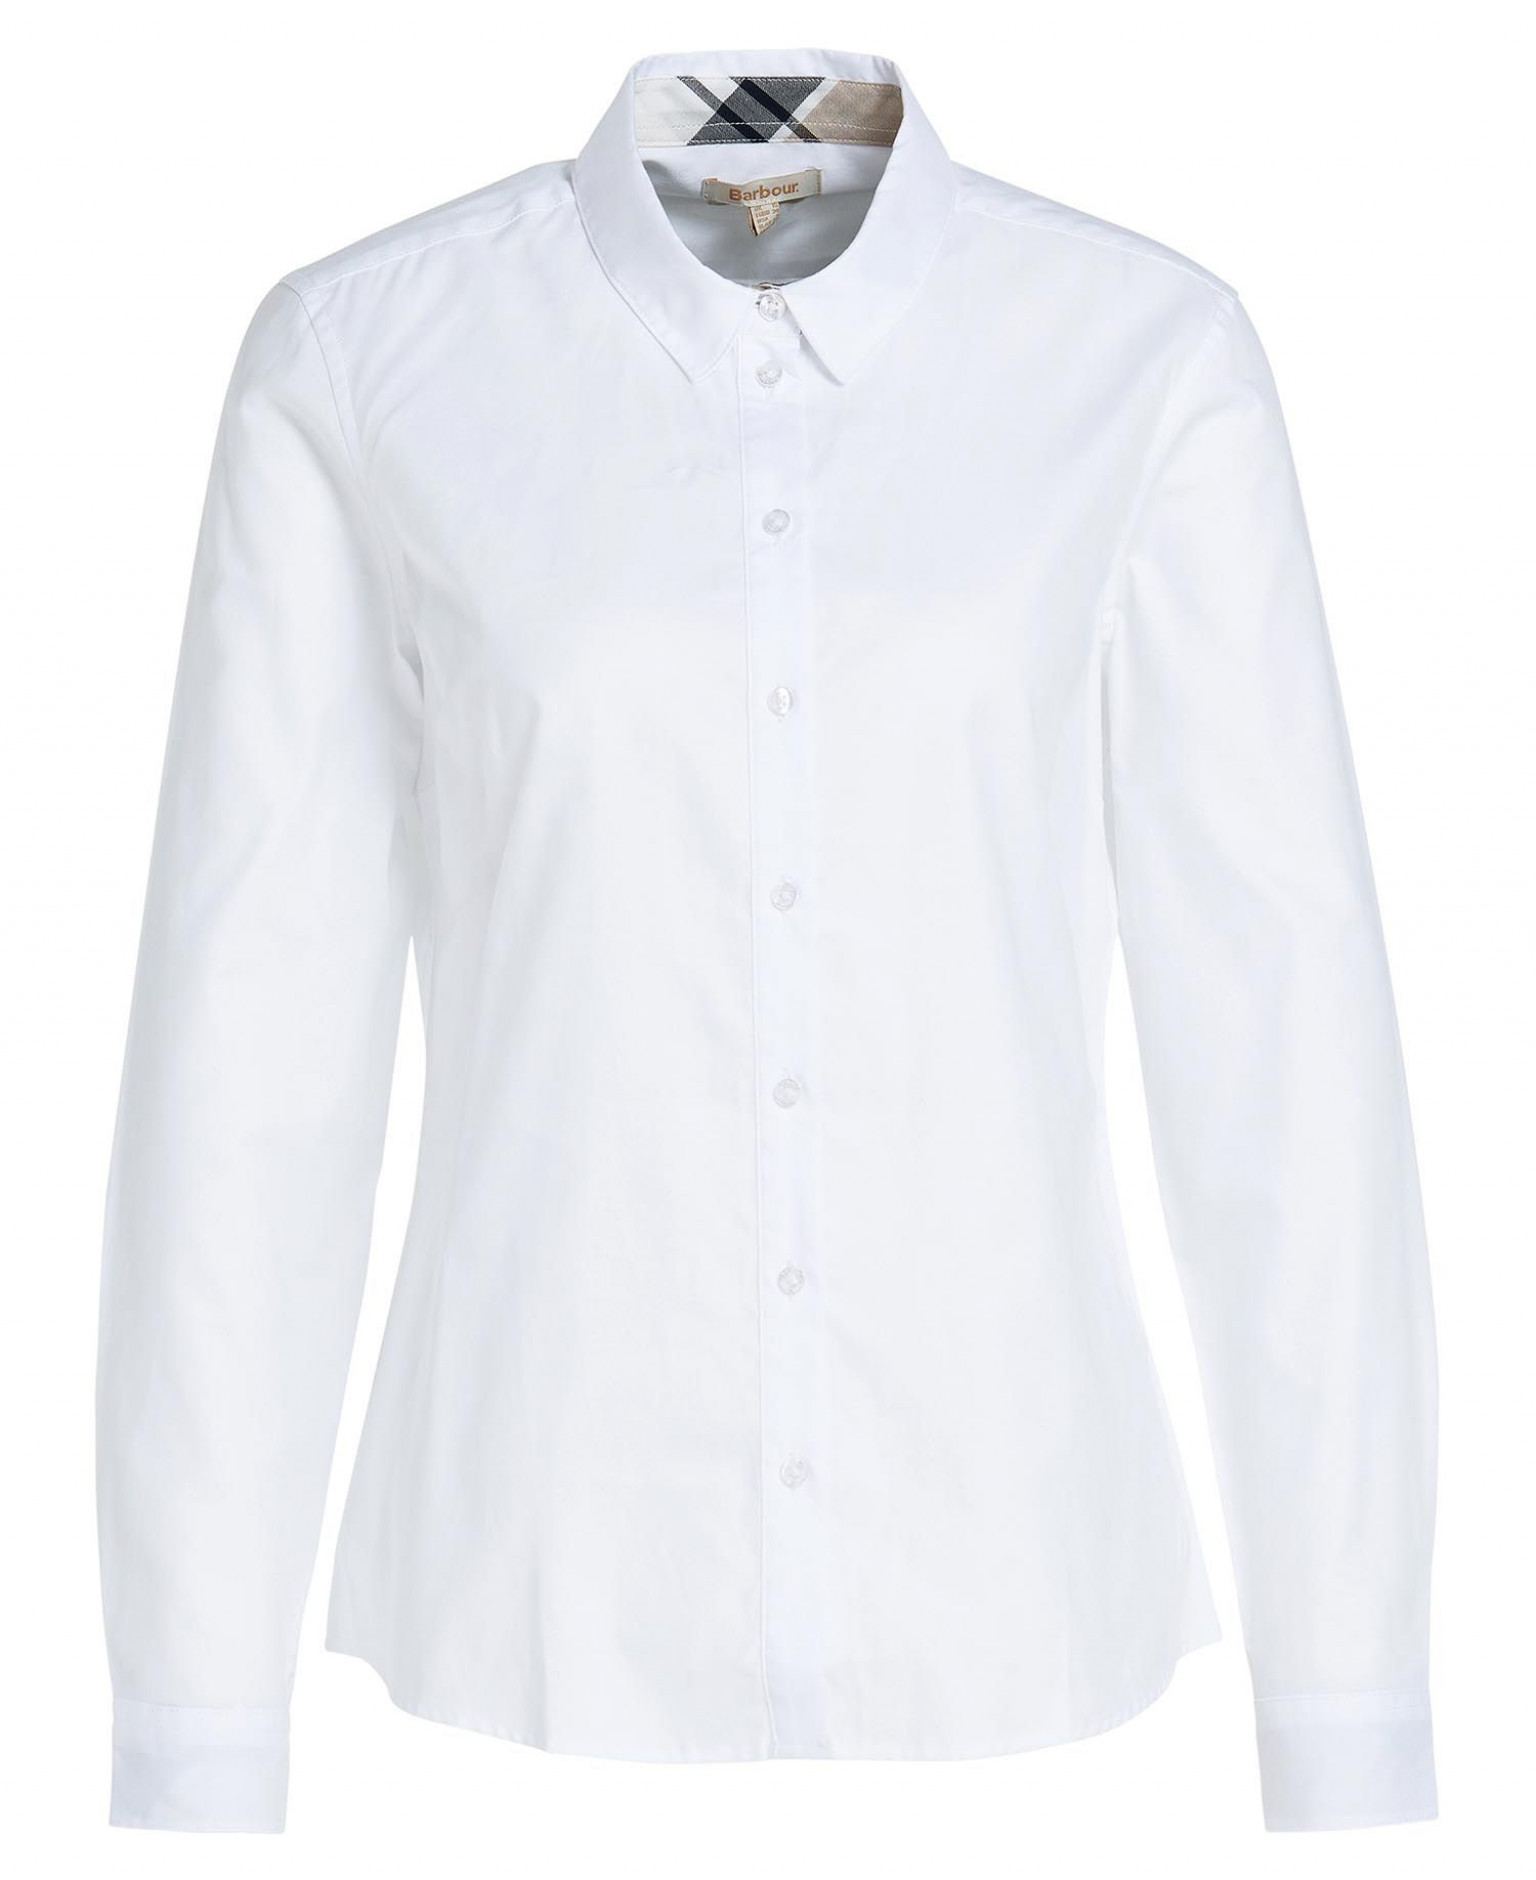 Barbour Derwent Shirt White